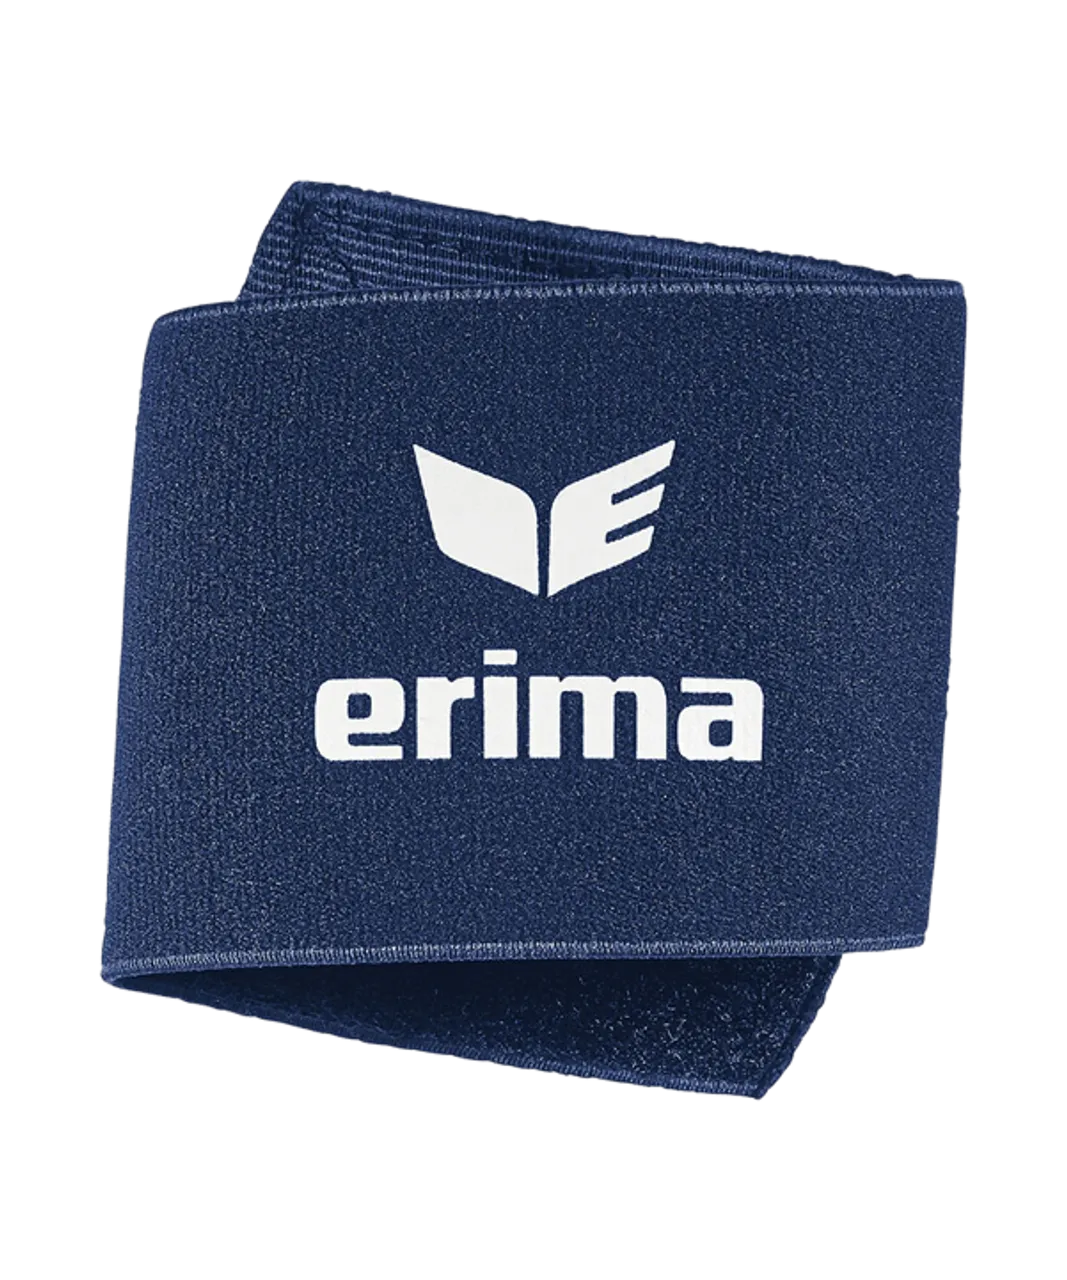 Erima Guard Stays Schienbeinschonerhalter Blau